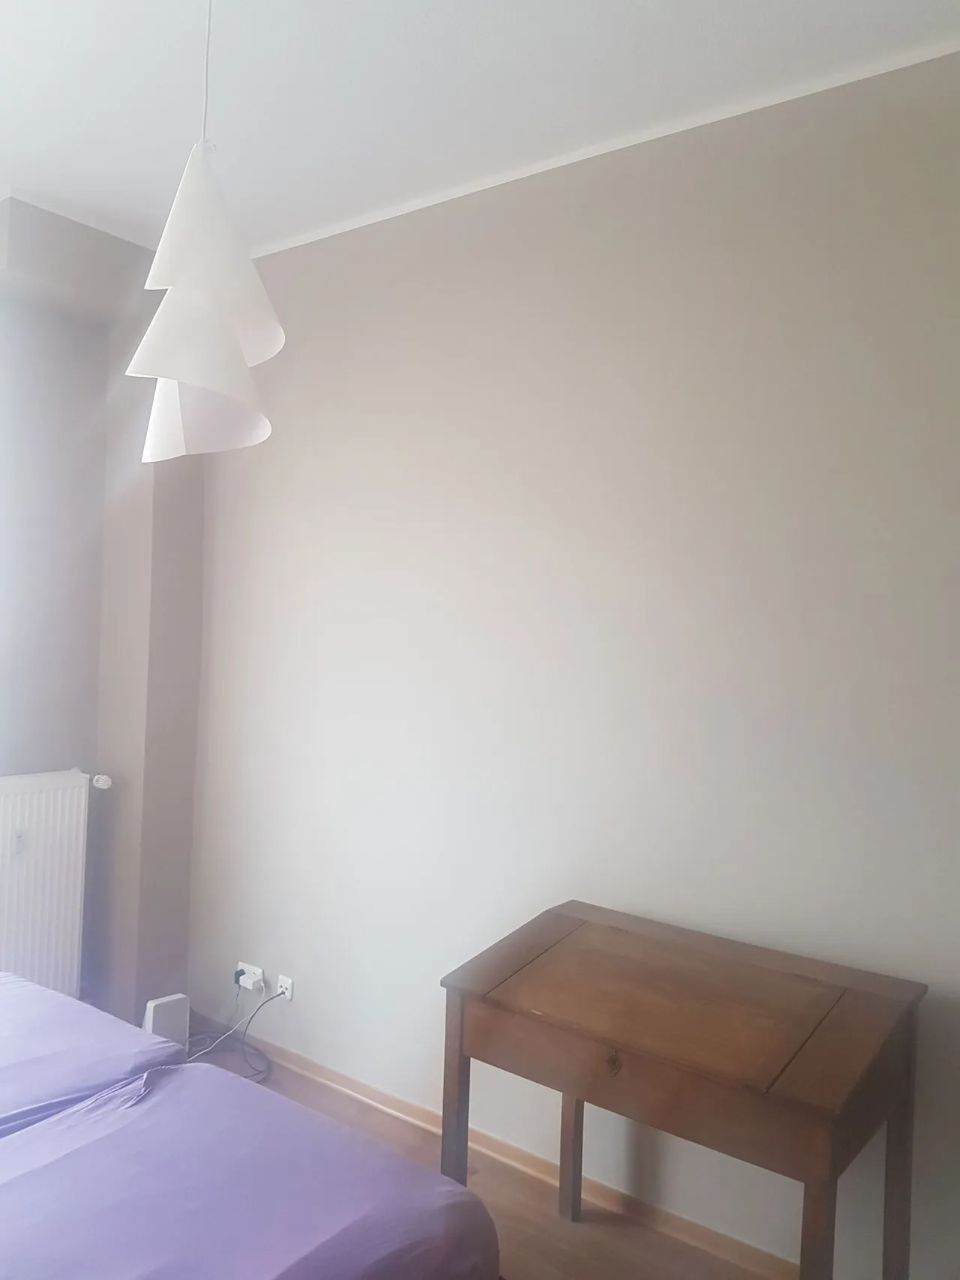 Malerarbeiten im Schlafzimmer, ausgeführt durch ARAGON Projektentwicklung & Bauwerksanierung GmbH